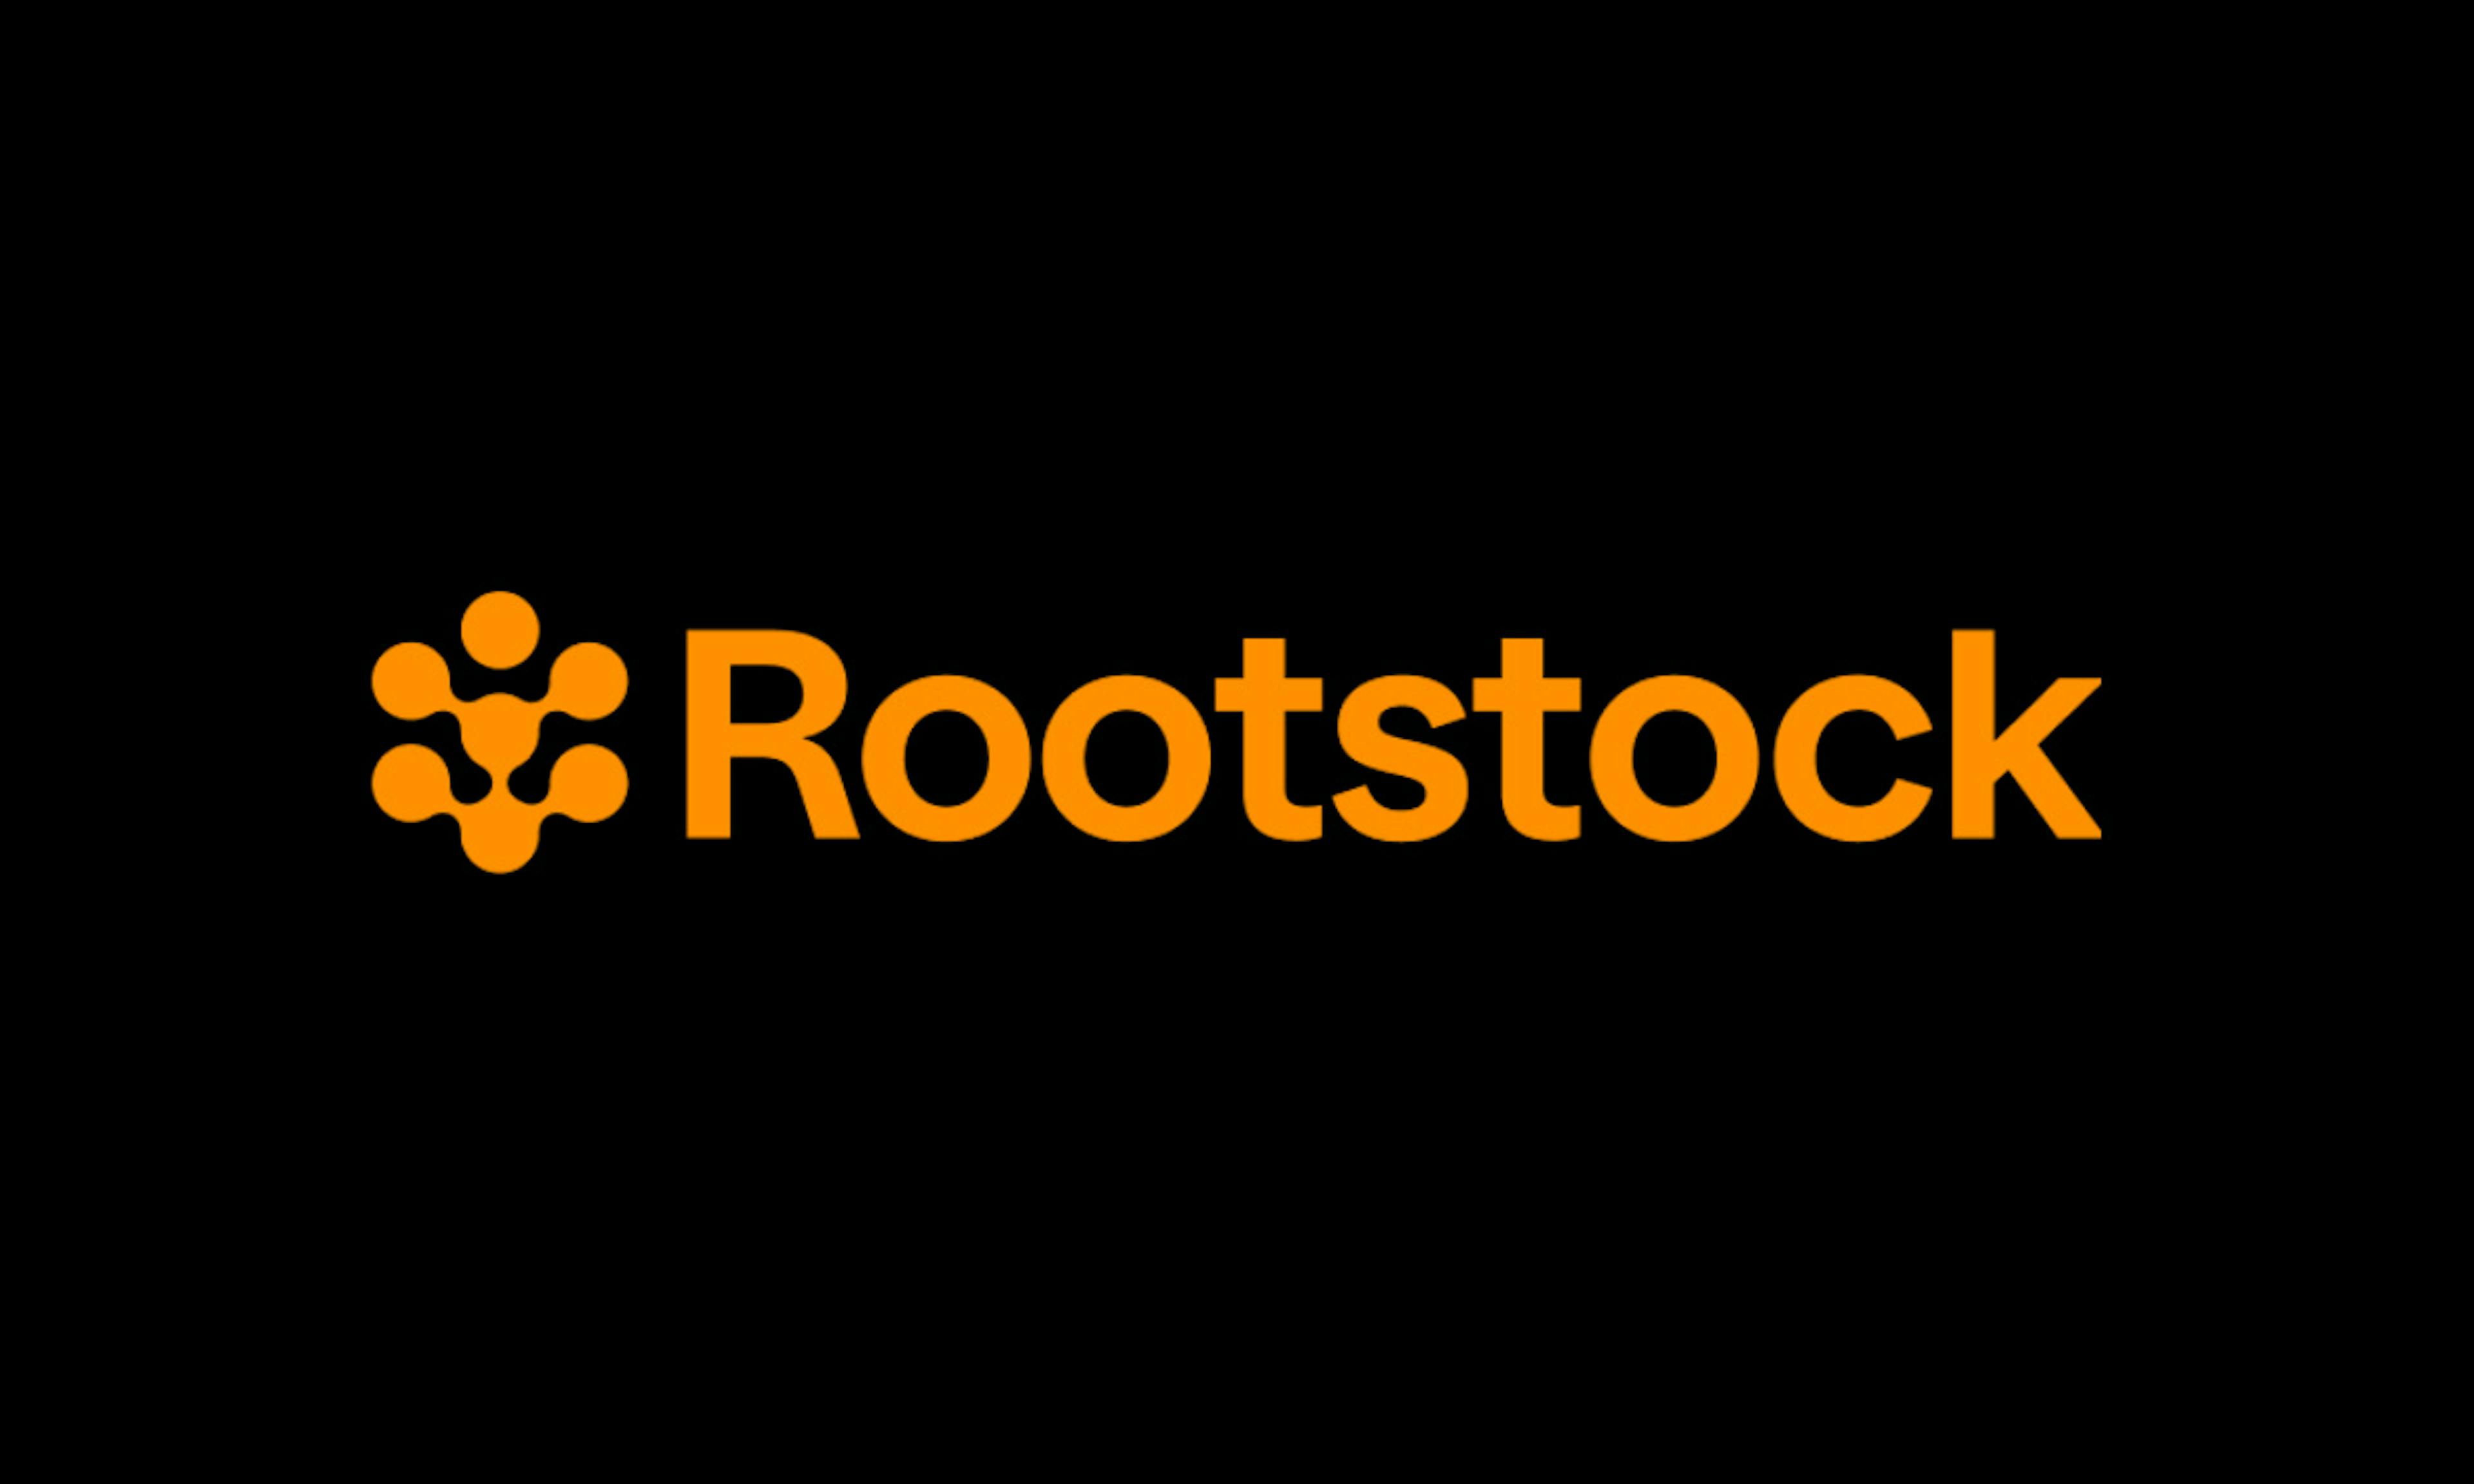 Rootstock logo. Source: Rootstock.io